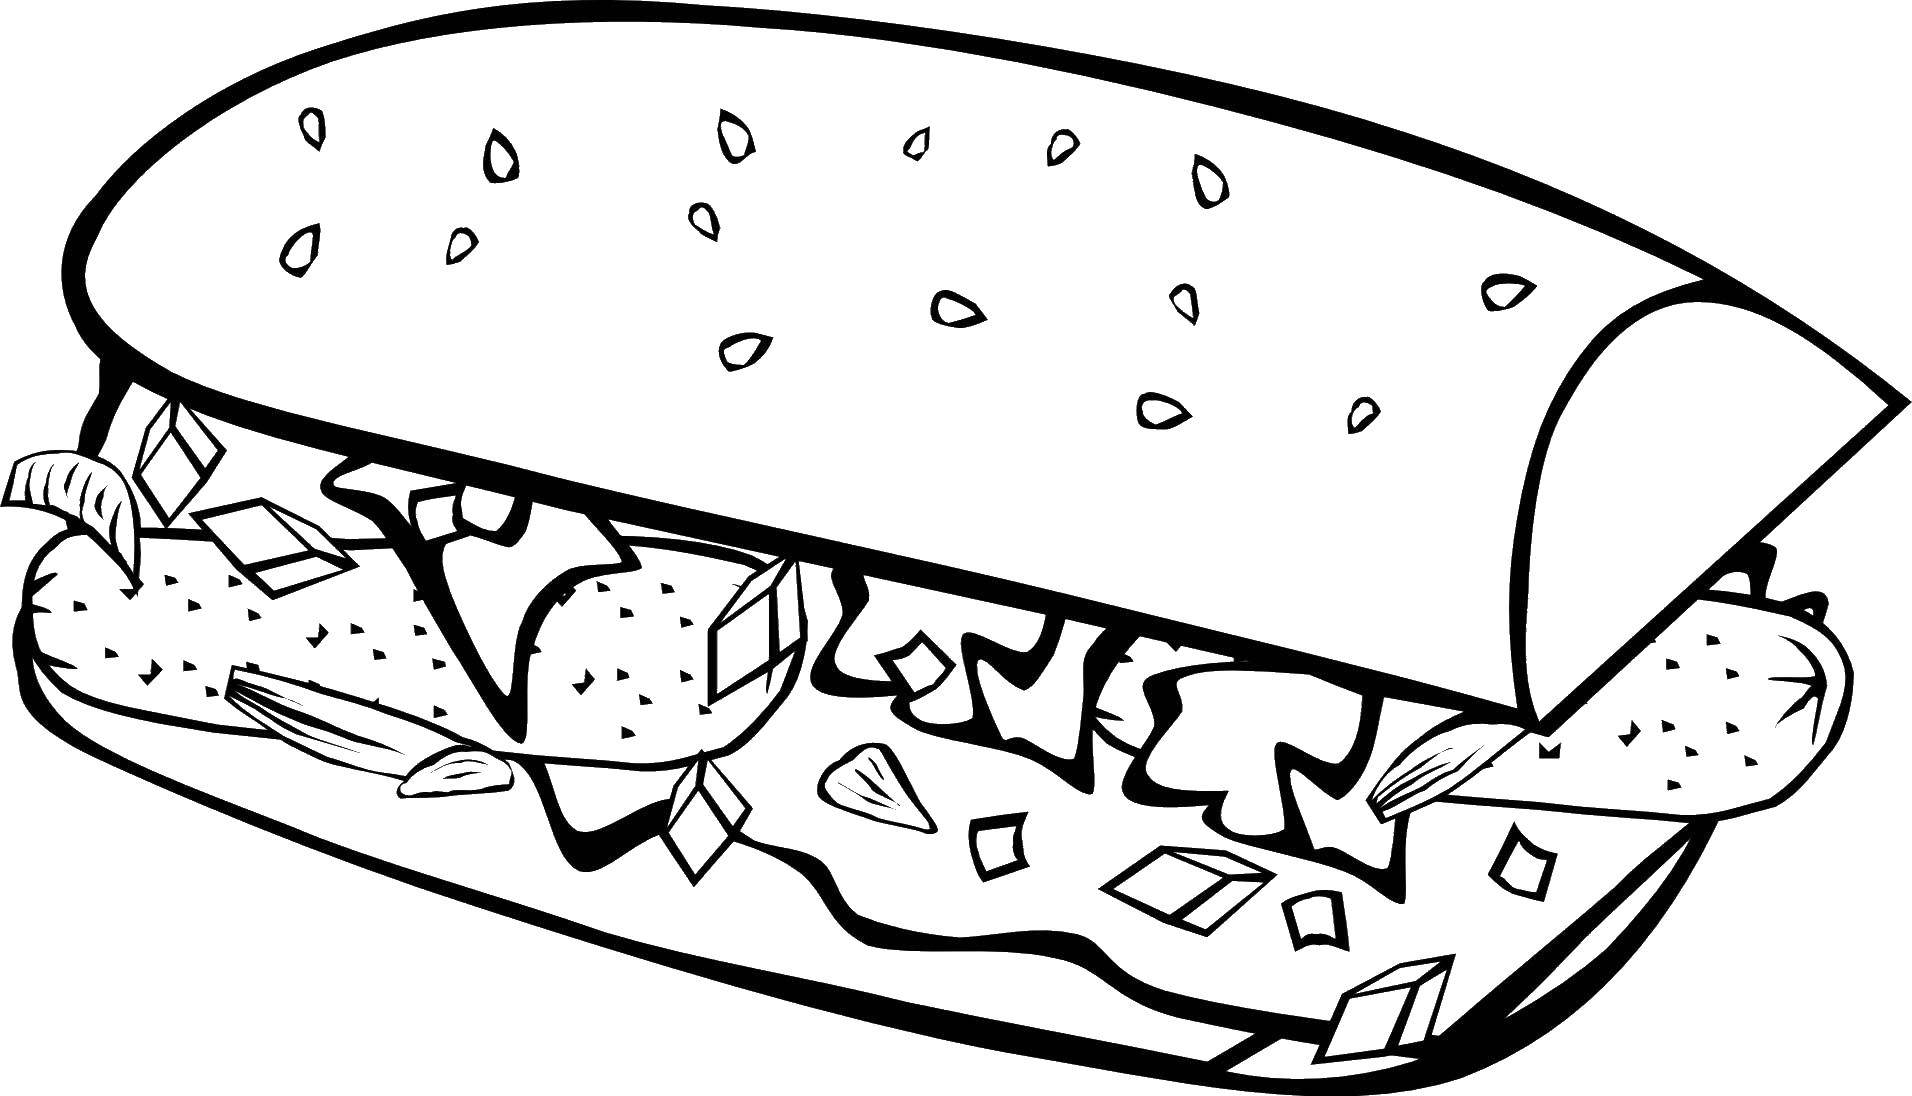 Название: Раскраска Сендвич. Категория: Еда. Теги: еда, сендвич.